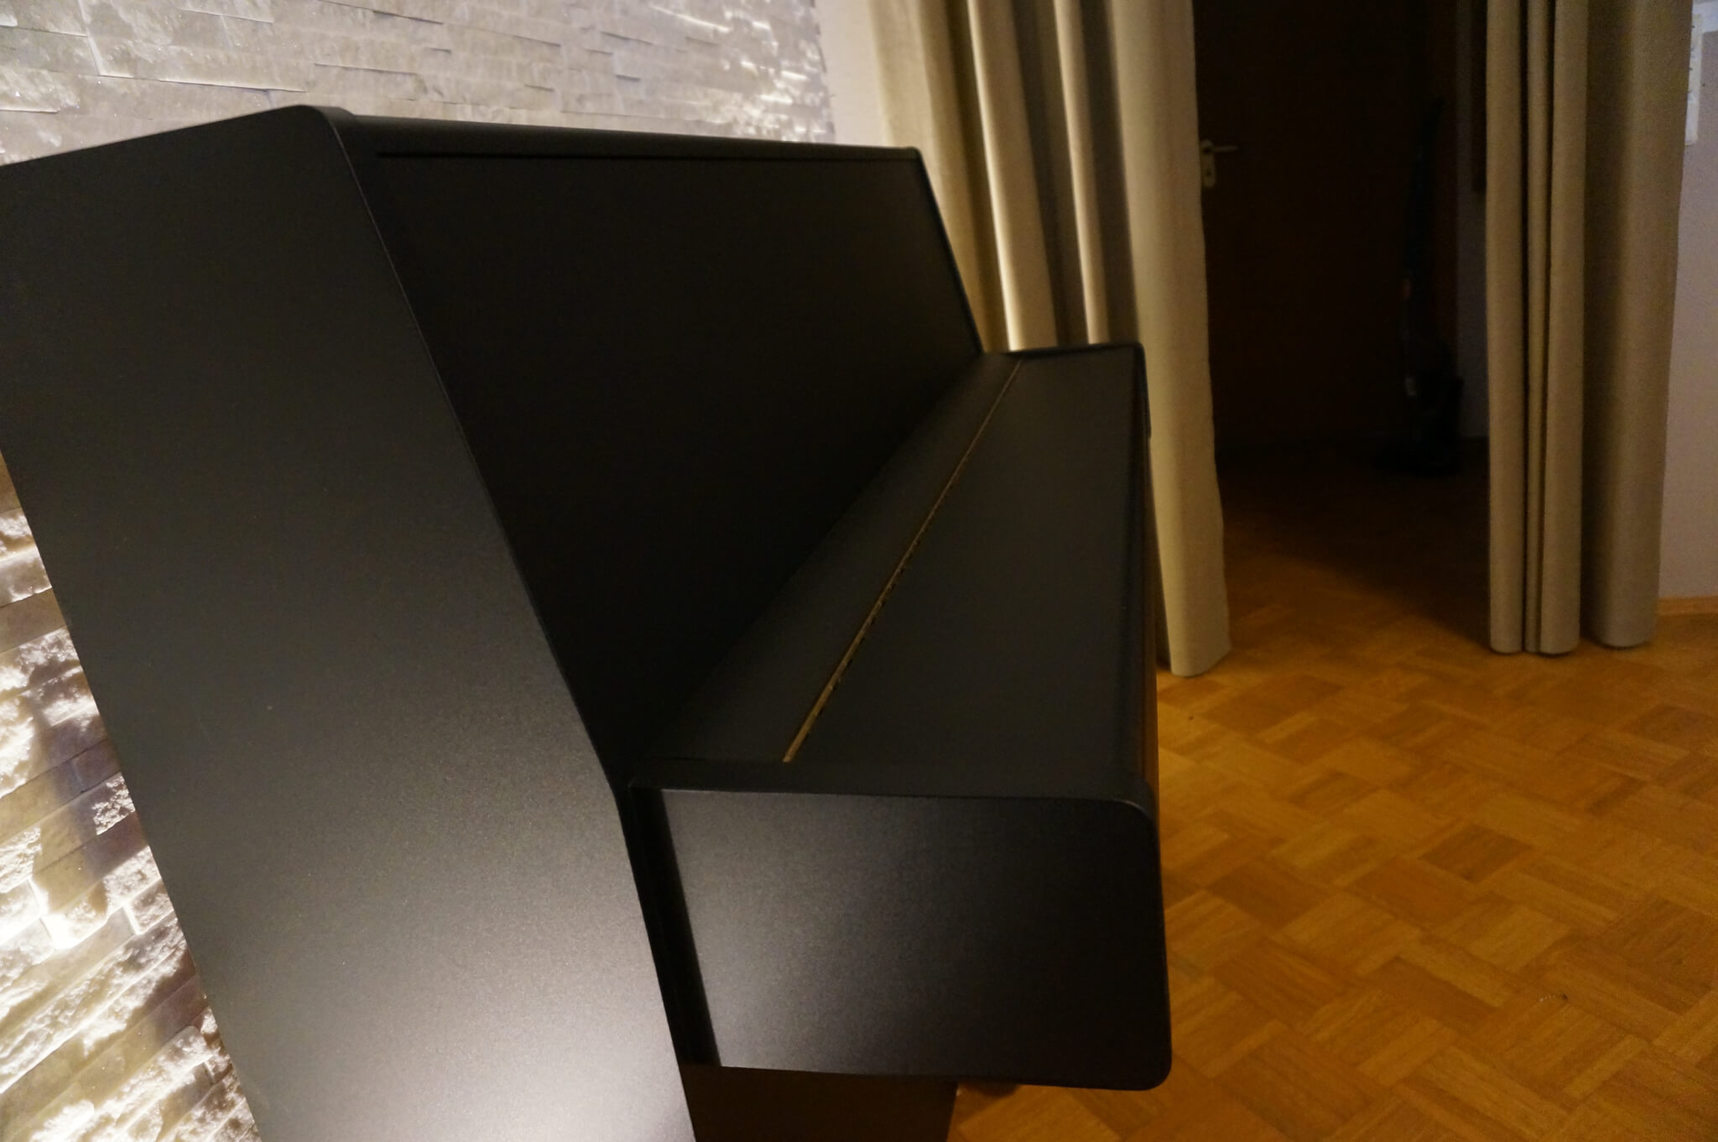 resimdo Klebefolie Möbel Klavier Wohnzimmer Beispiel schwarz nachher